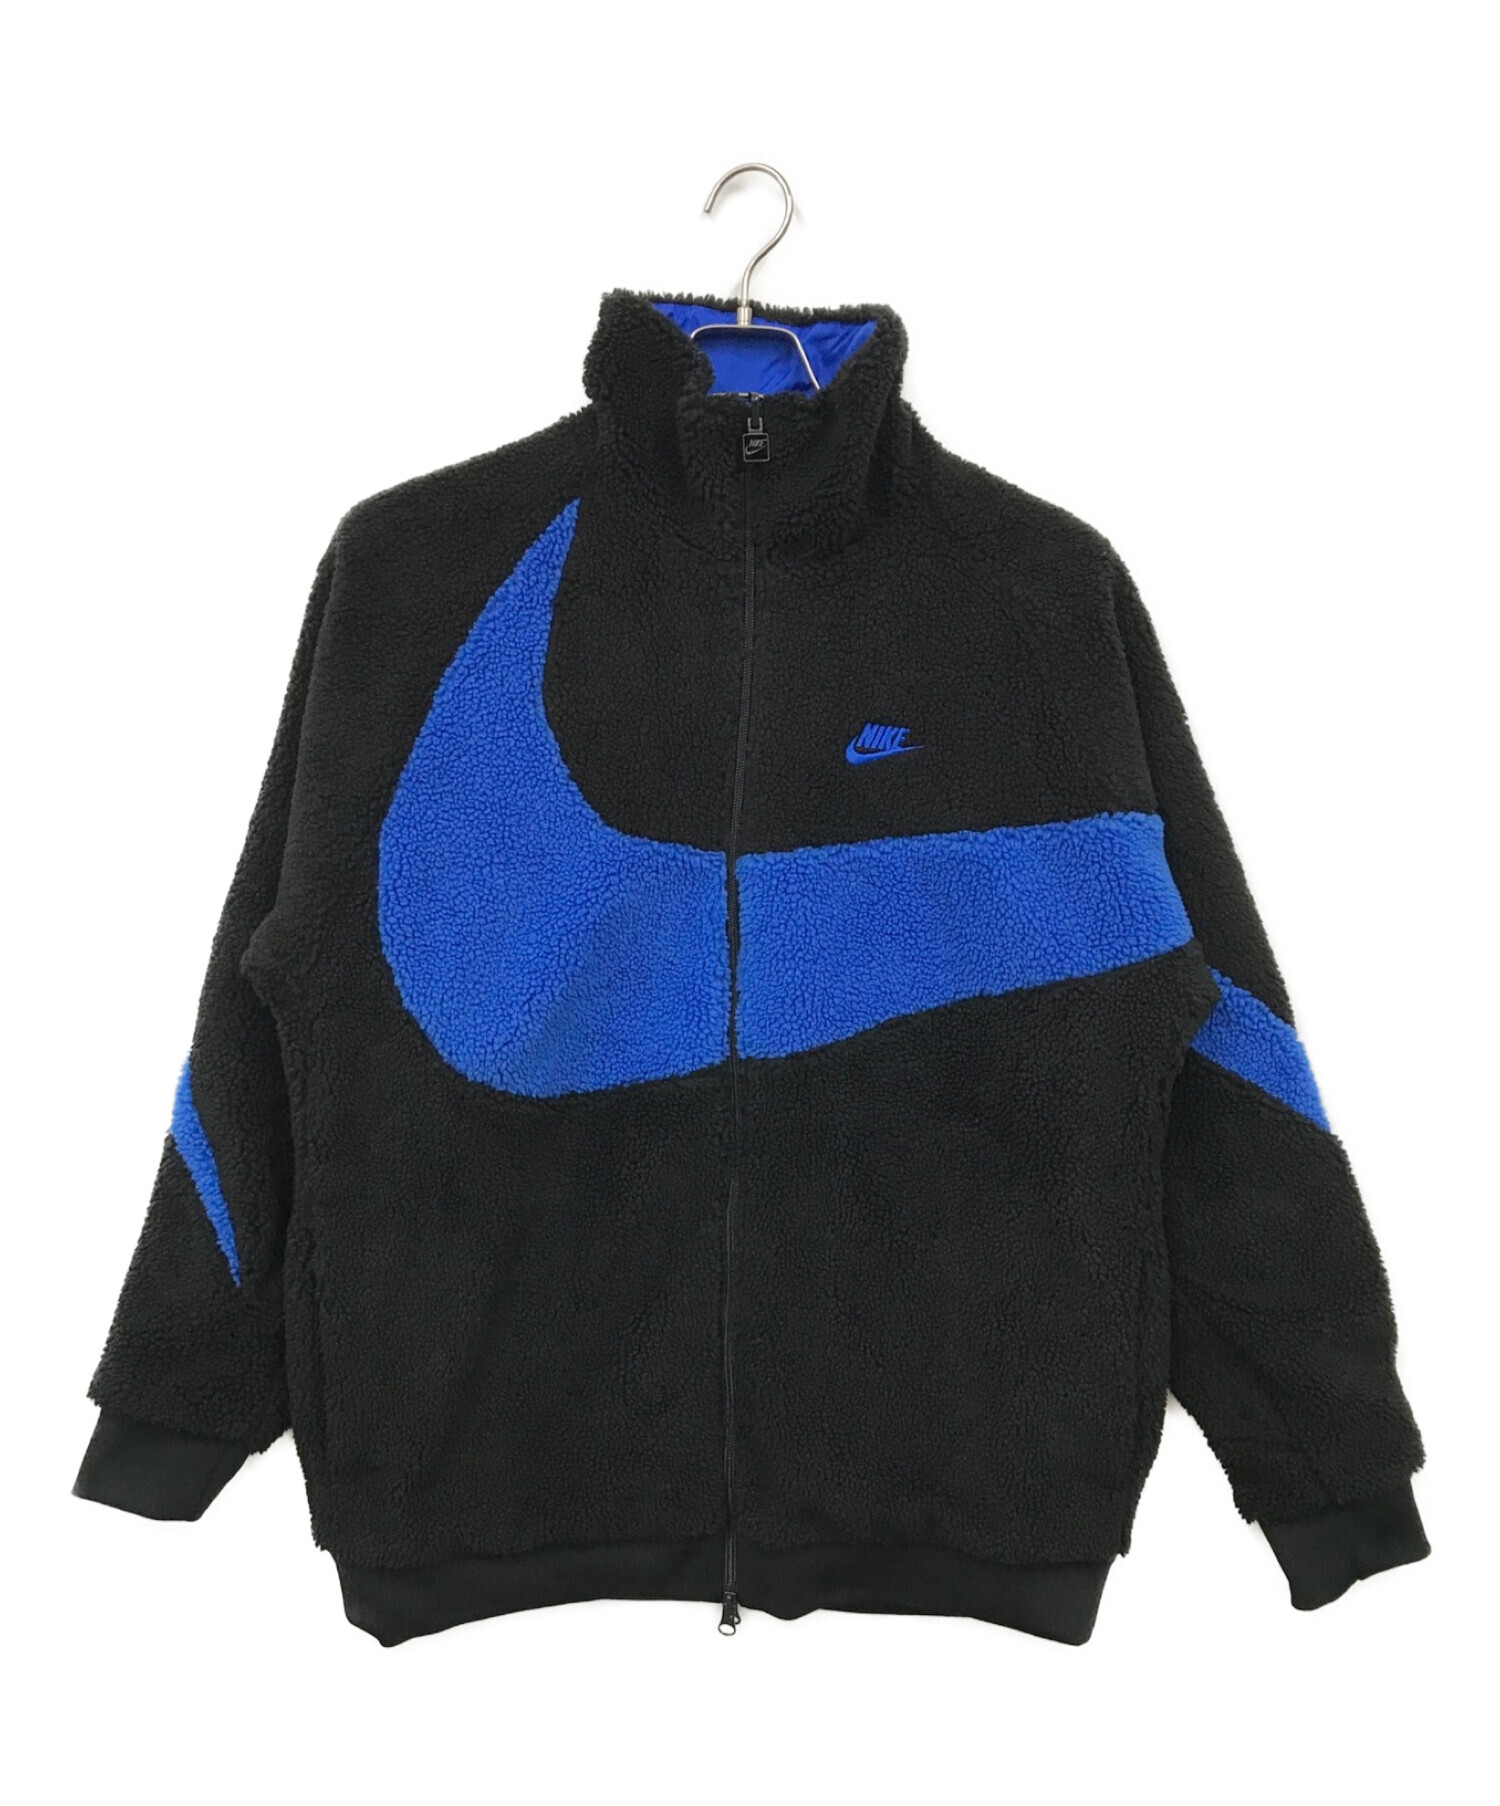 NIKE (ナイキ) リバーシブルボアジャケット ブルー サイズ:L